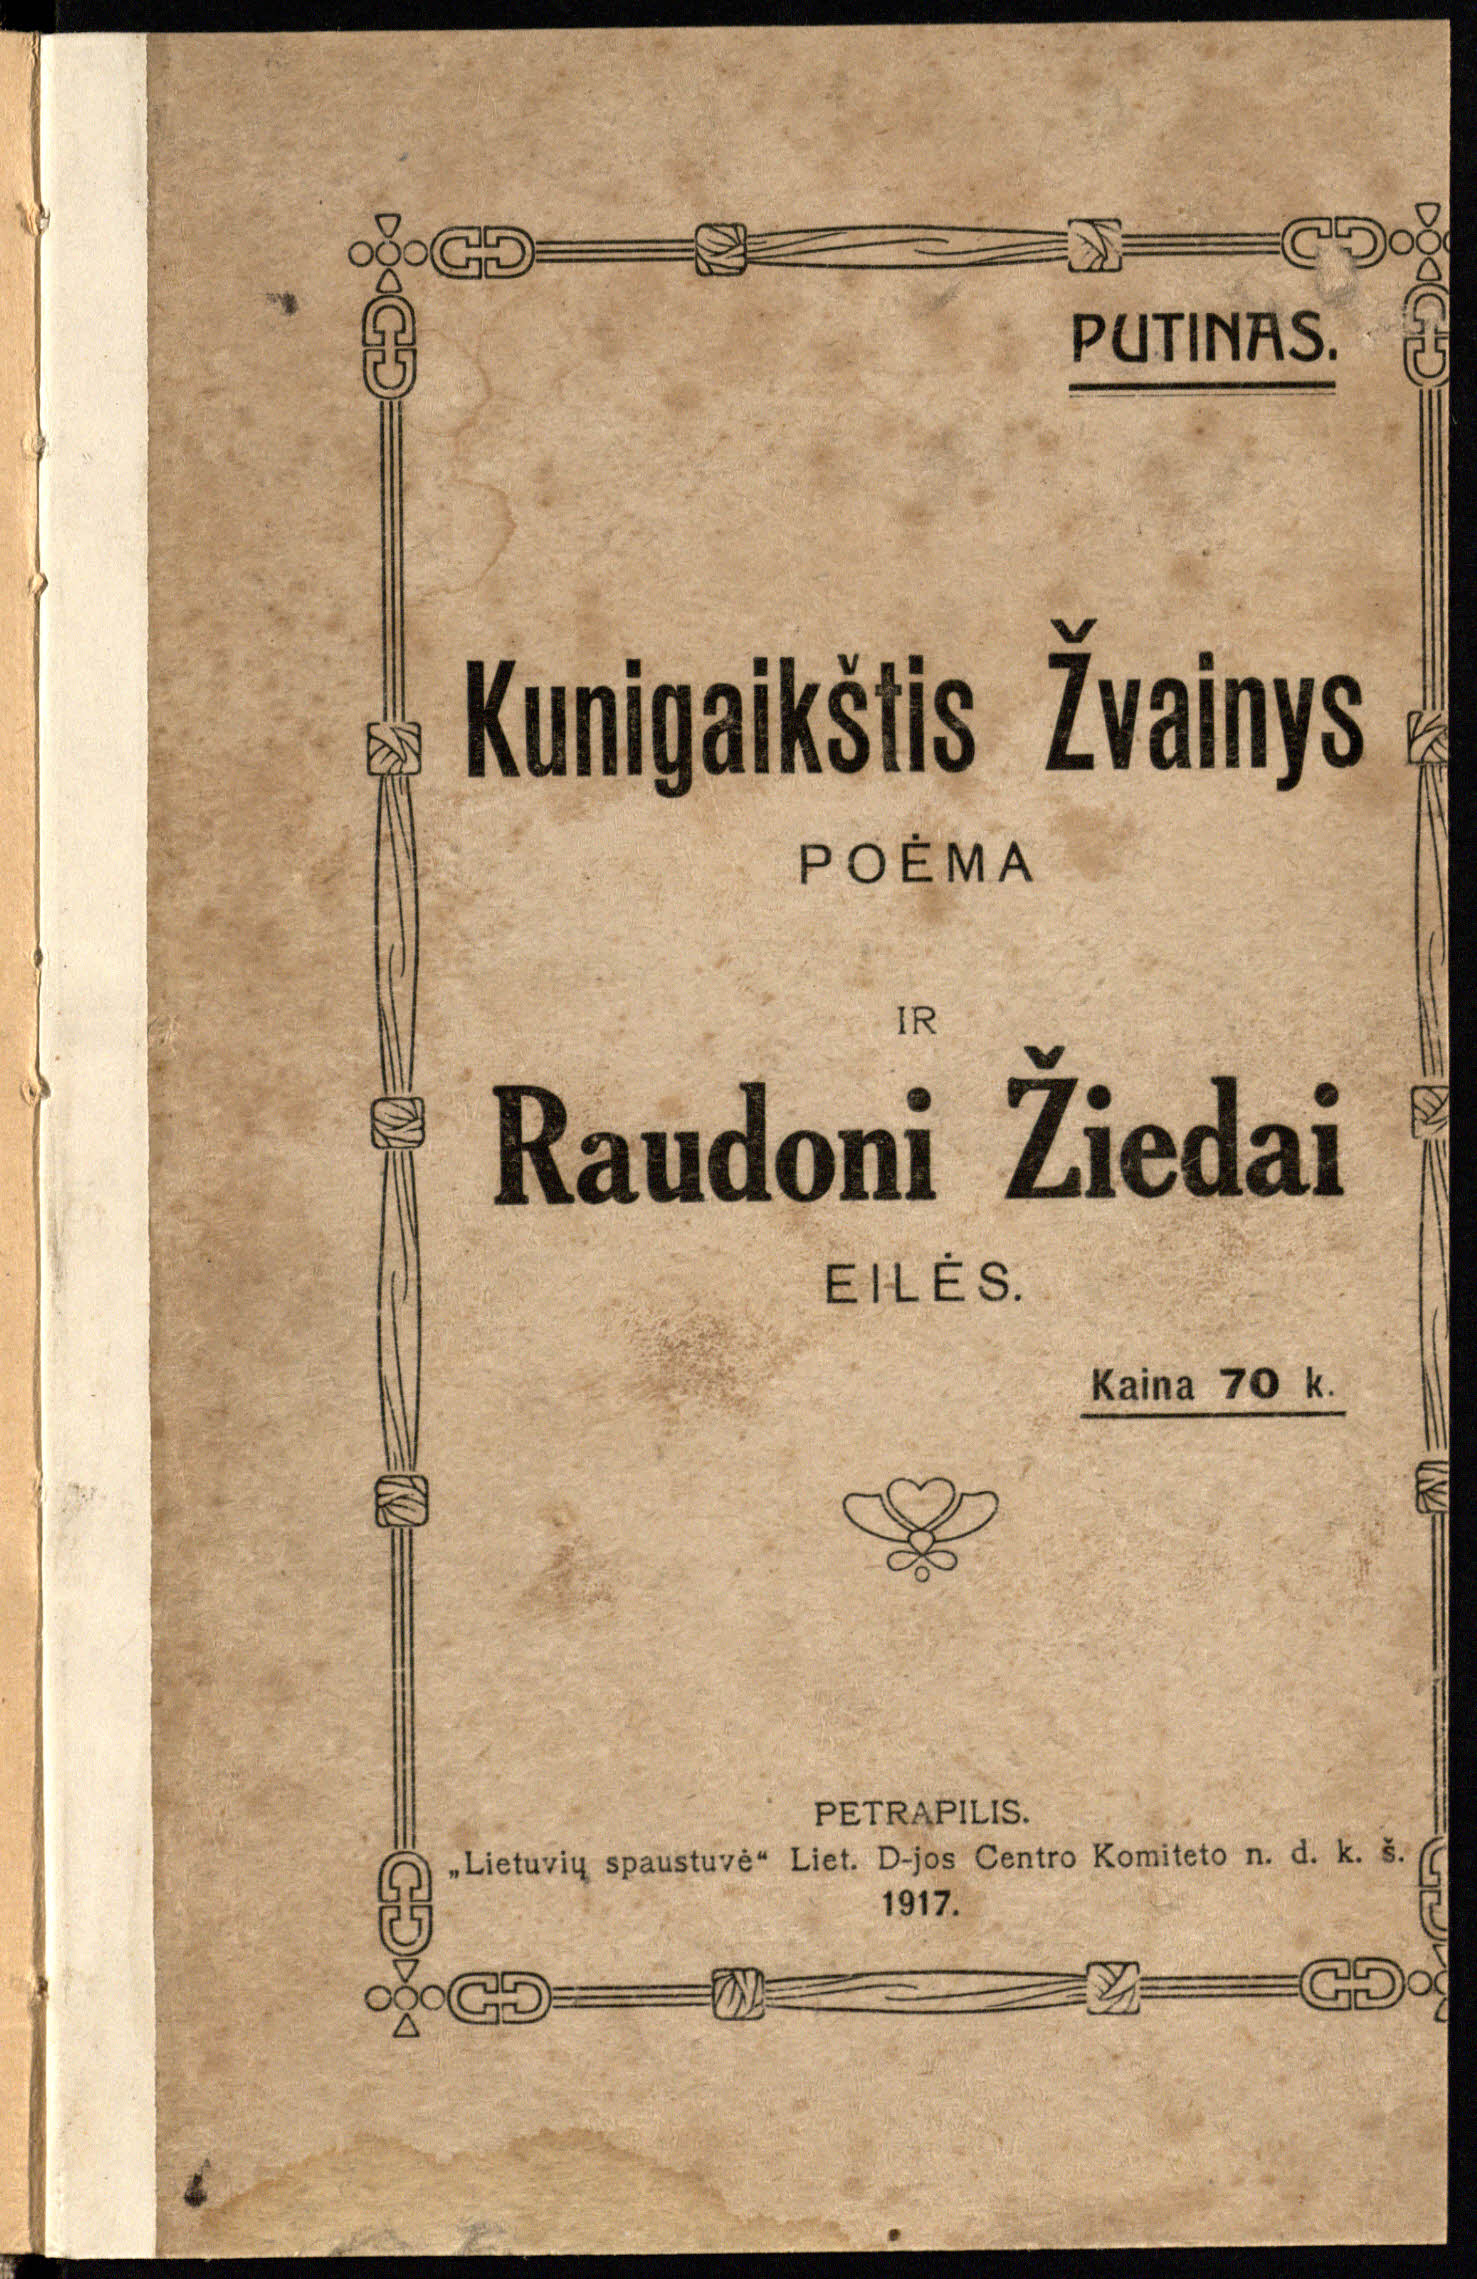 Mykolaitis-Putinas, Vincas. Kunigaikštis Žvainys. Raudoni žiedai. Petrapilis, 1917.